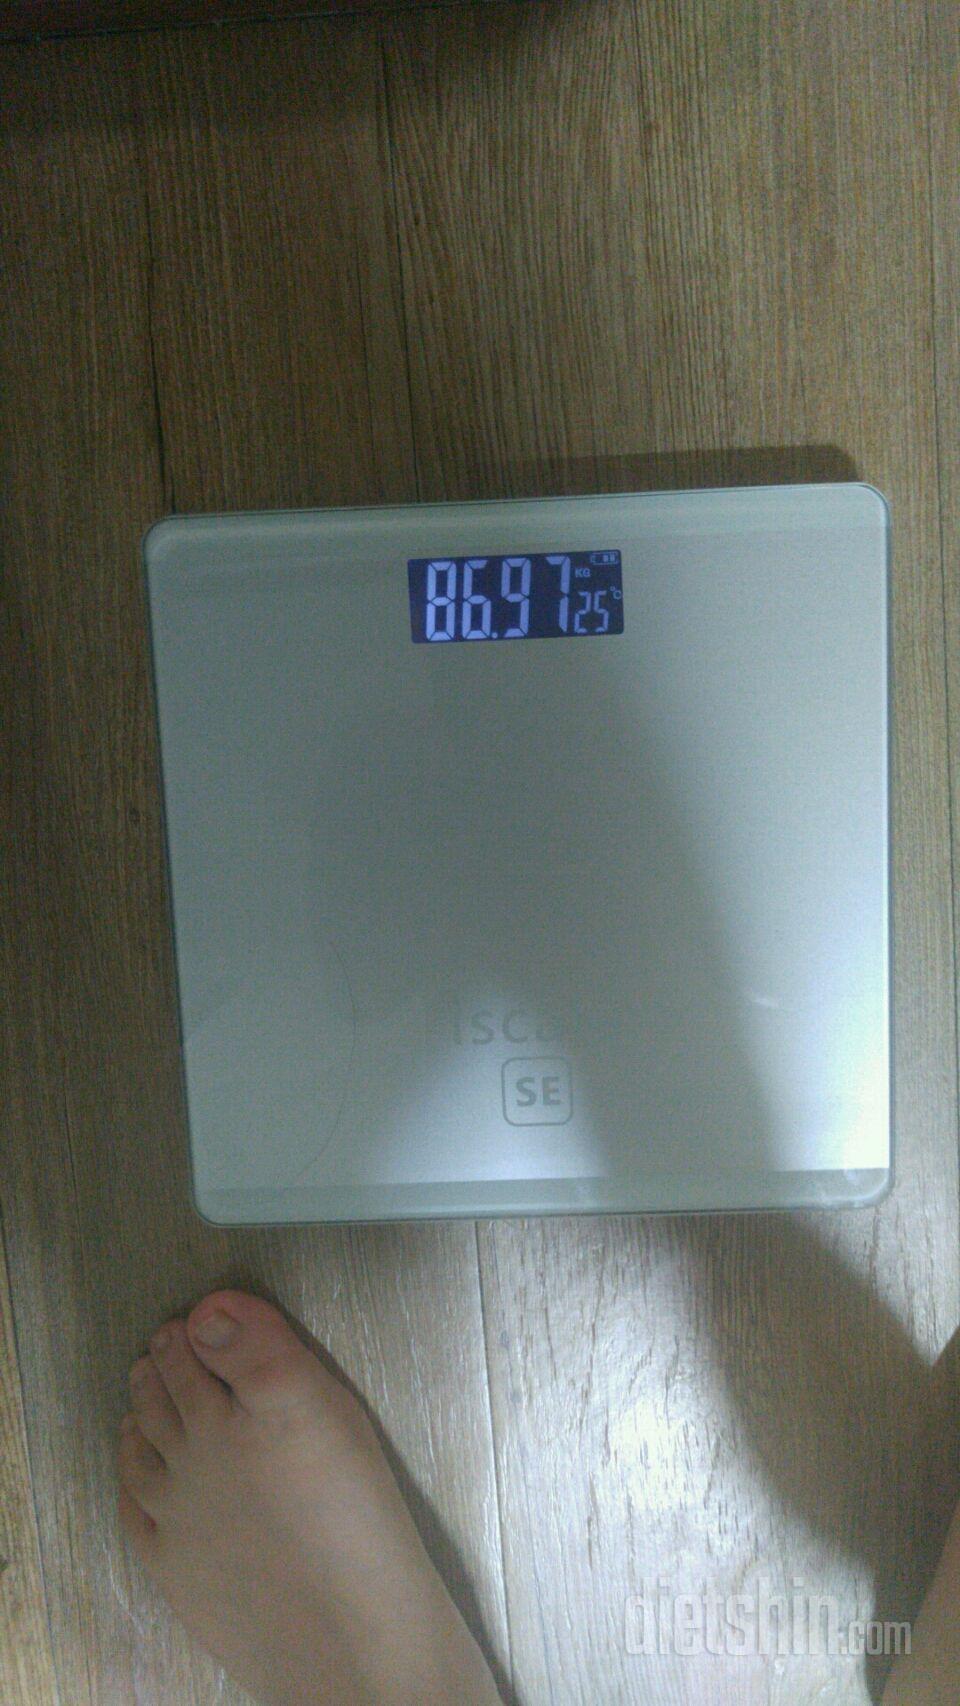 6월 8일 7일차 (어제보다 -0.8kg)